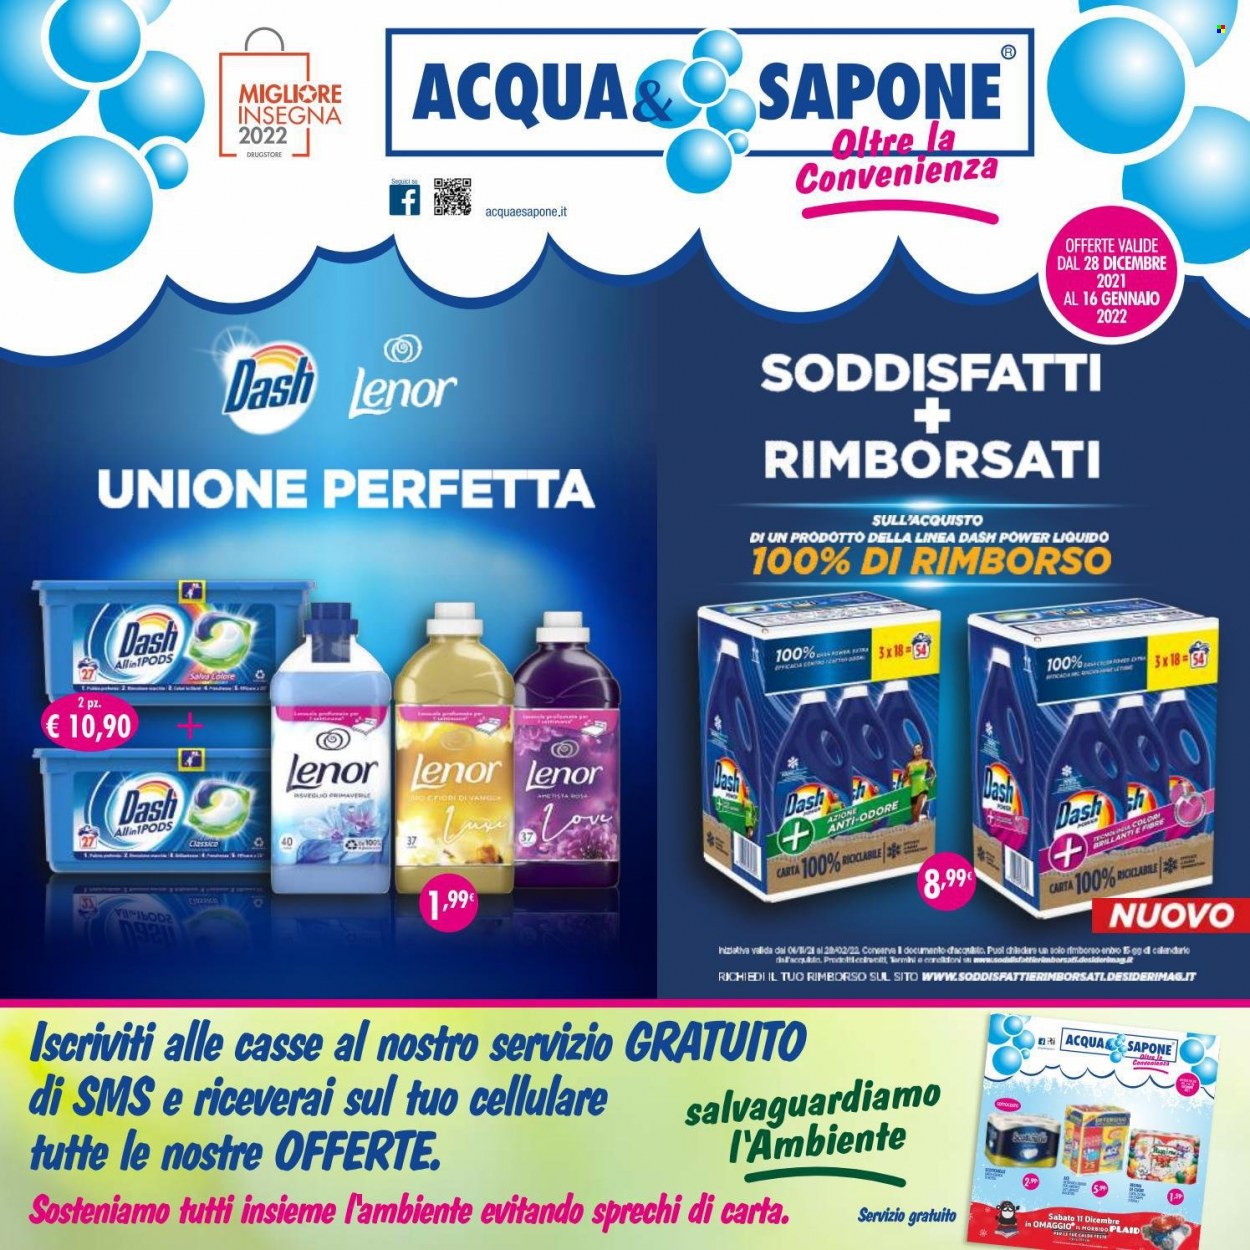 Volantino Acqua & Sapone - 28/12/2021 - 16/1/2022 - Prodotti in offerta - Lenor, Dash, sapone. Pagina 1.